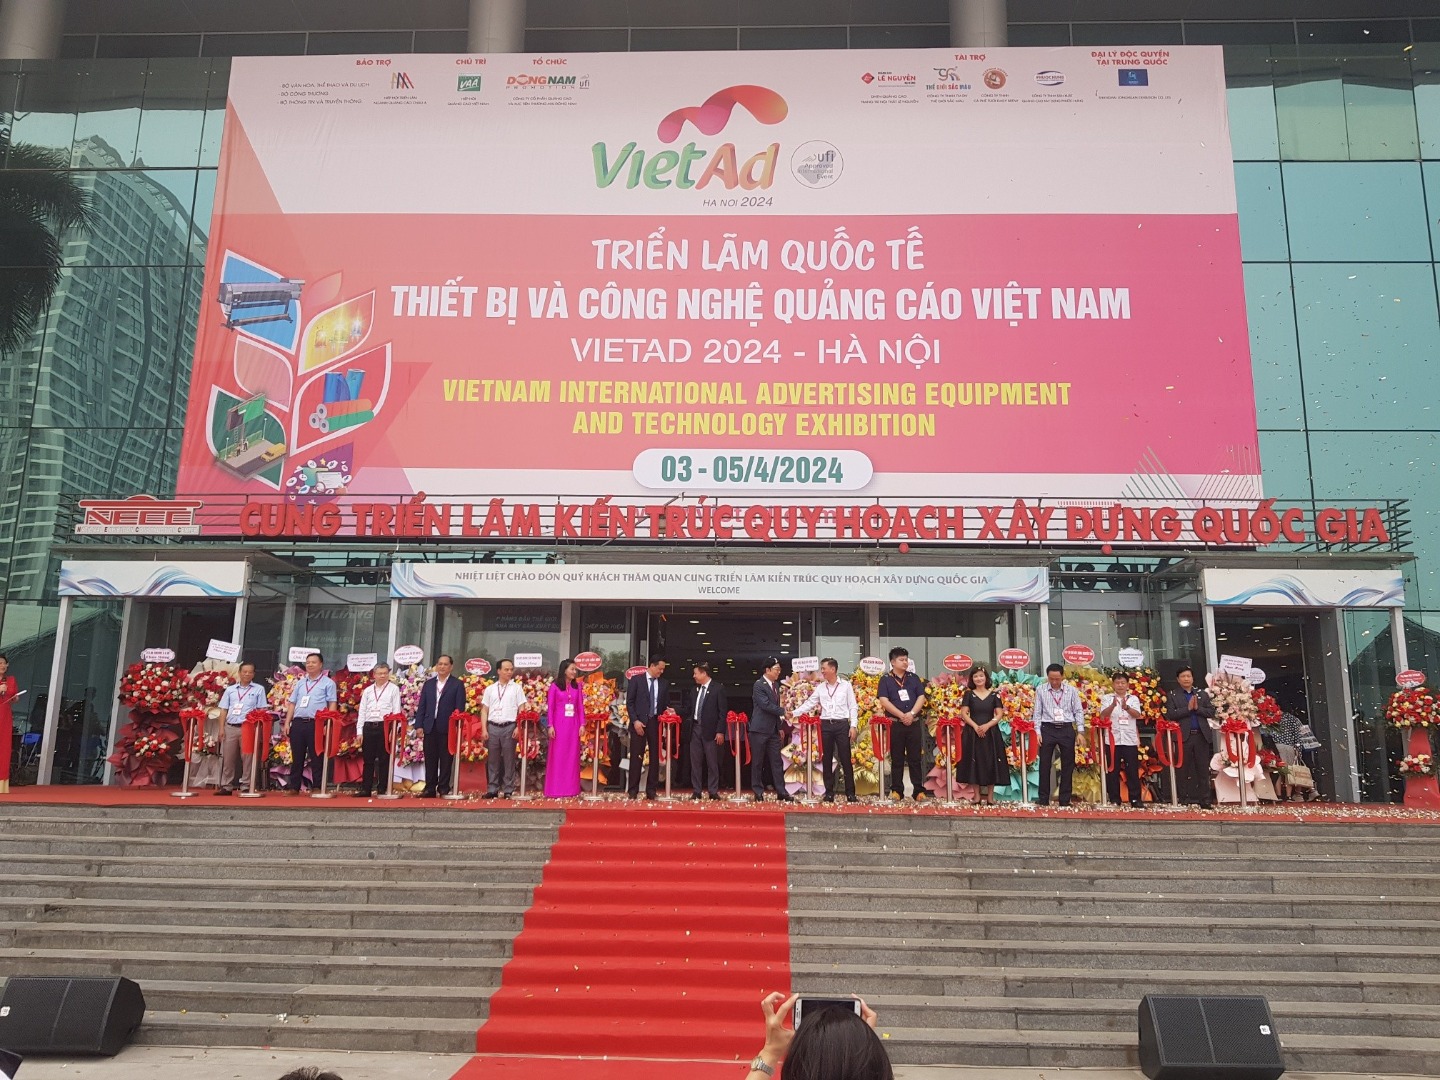 Triển lãm quốc tế Thiết bị và Công nghệ Quảng cáo Việt Nam